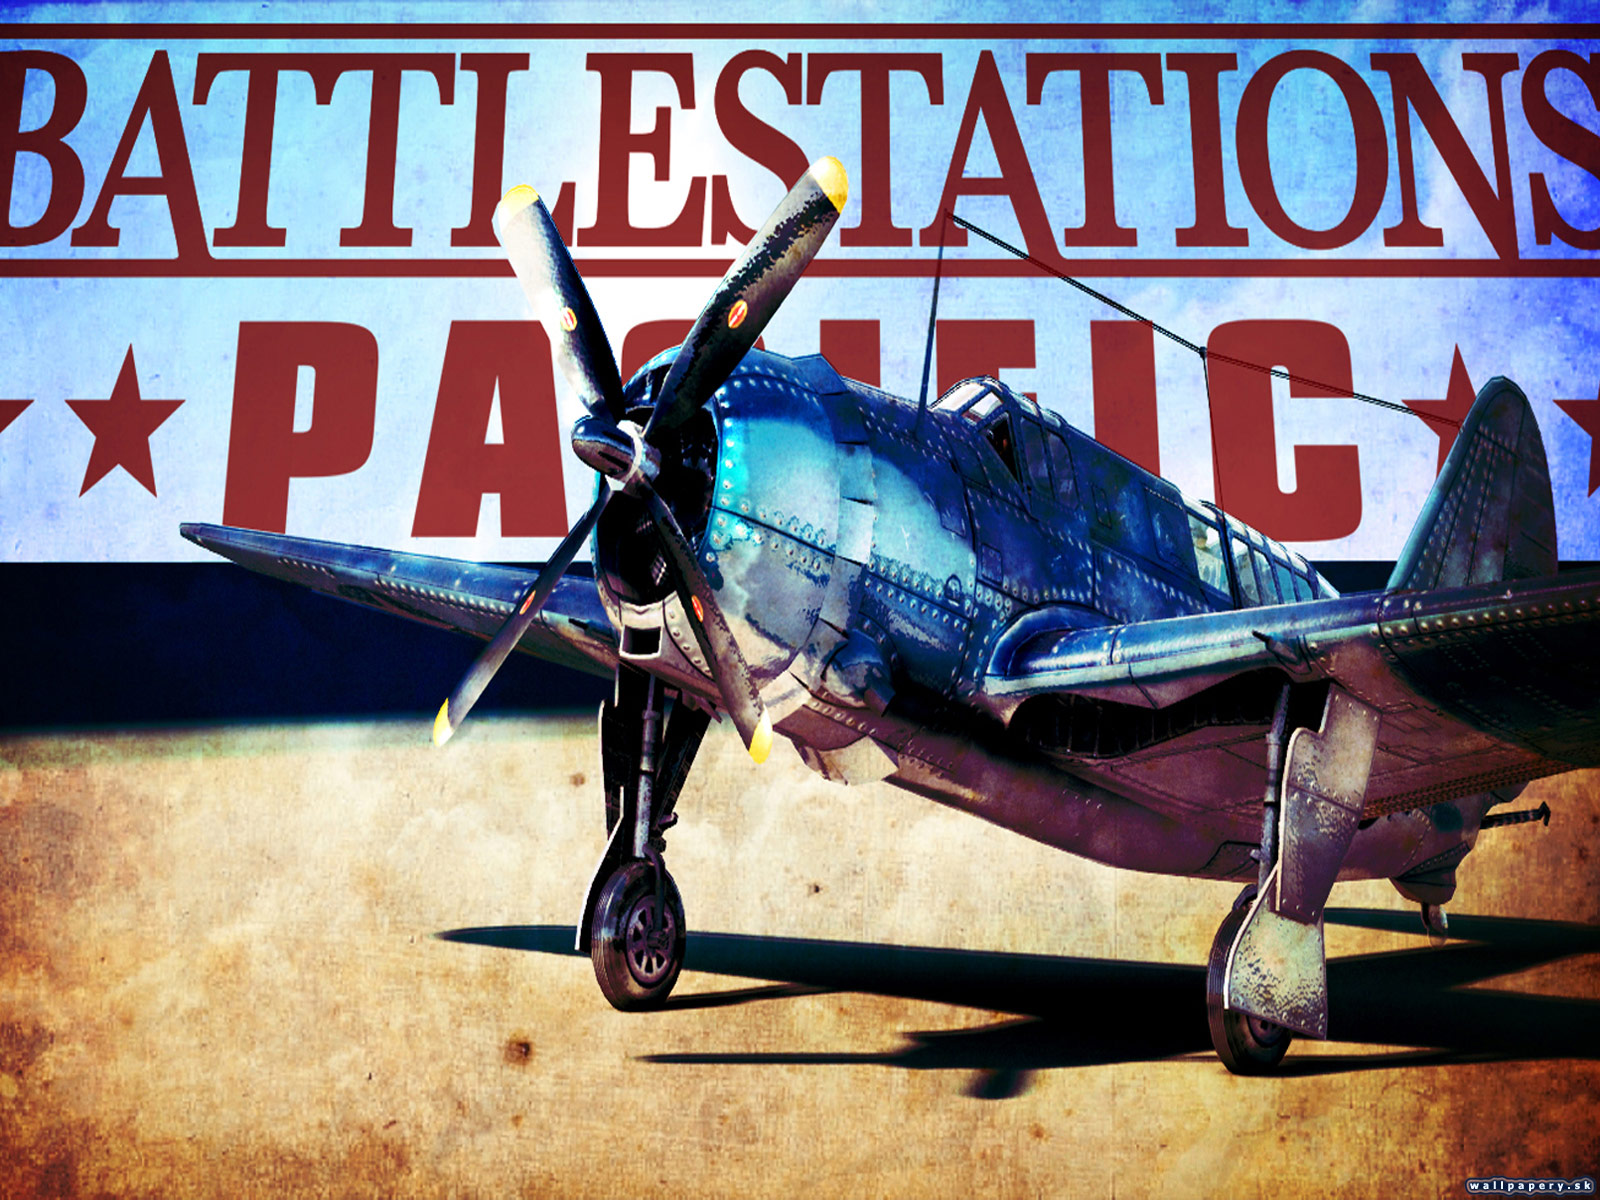 Battlestations: Pacific - wallpaper 8